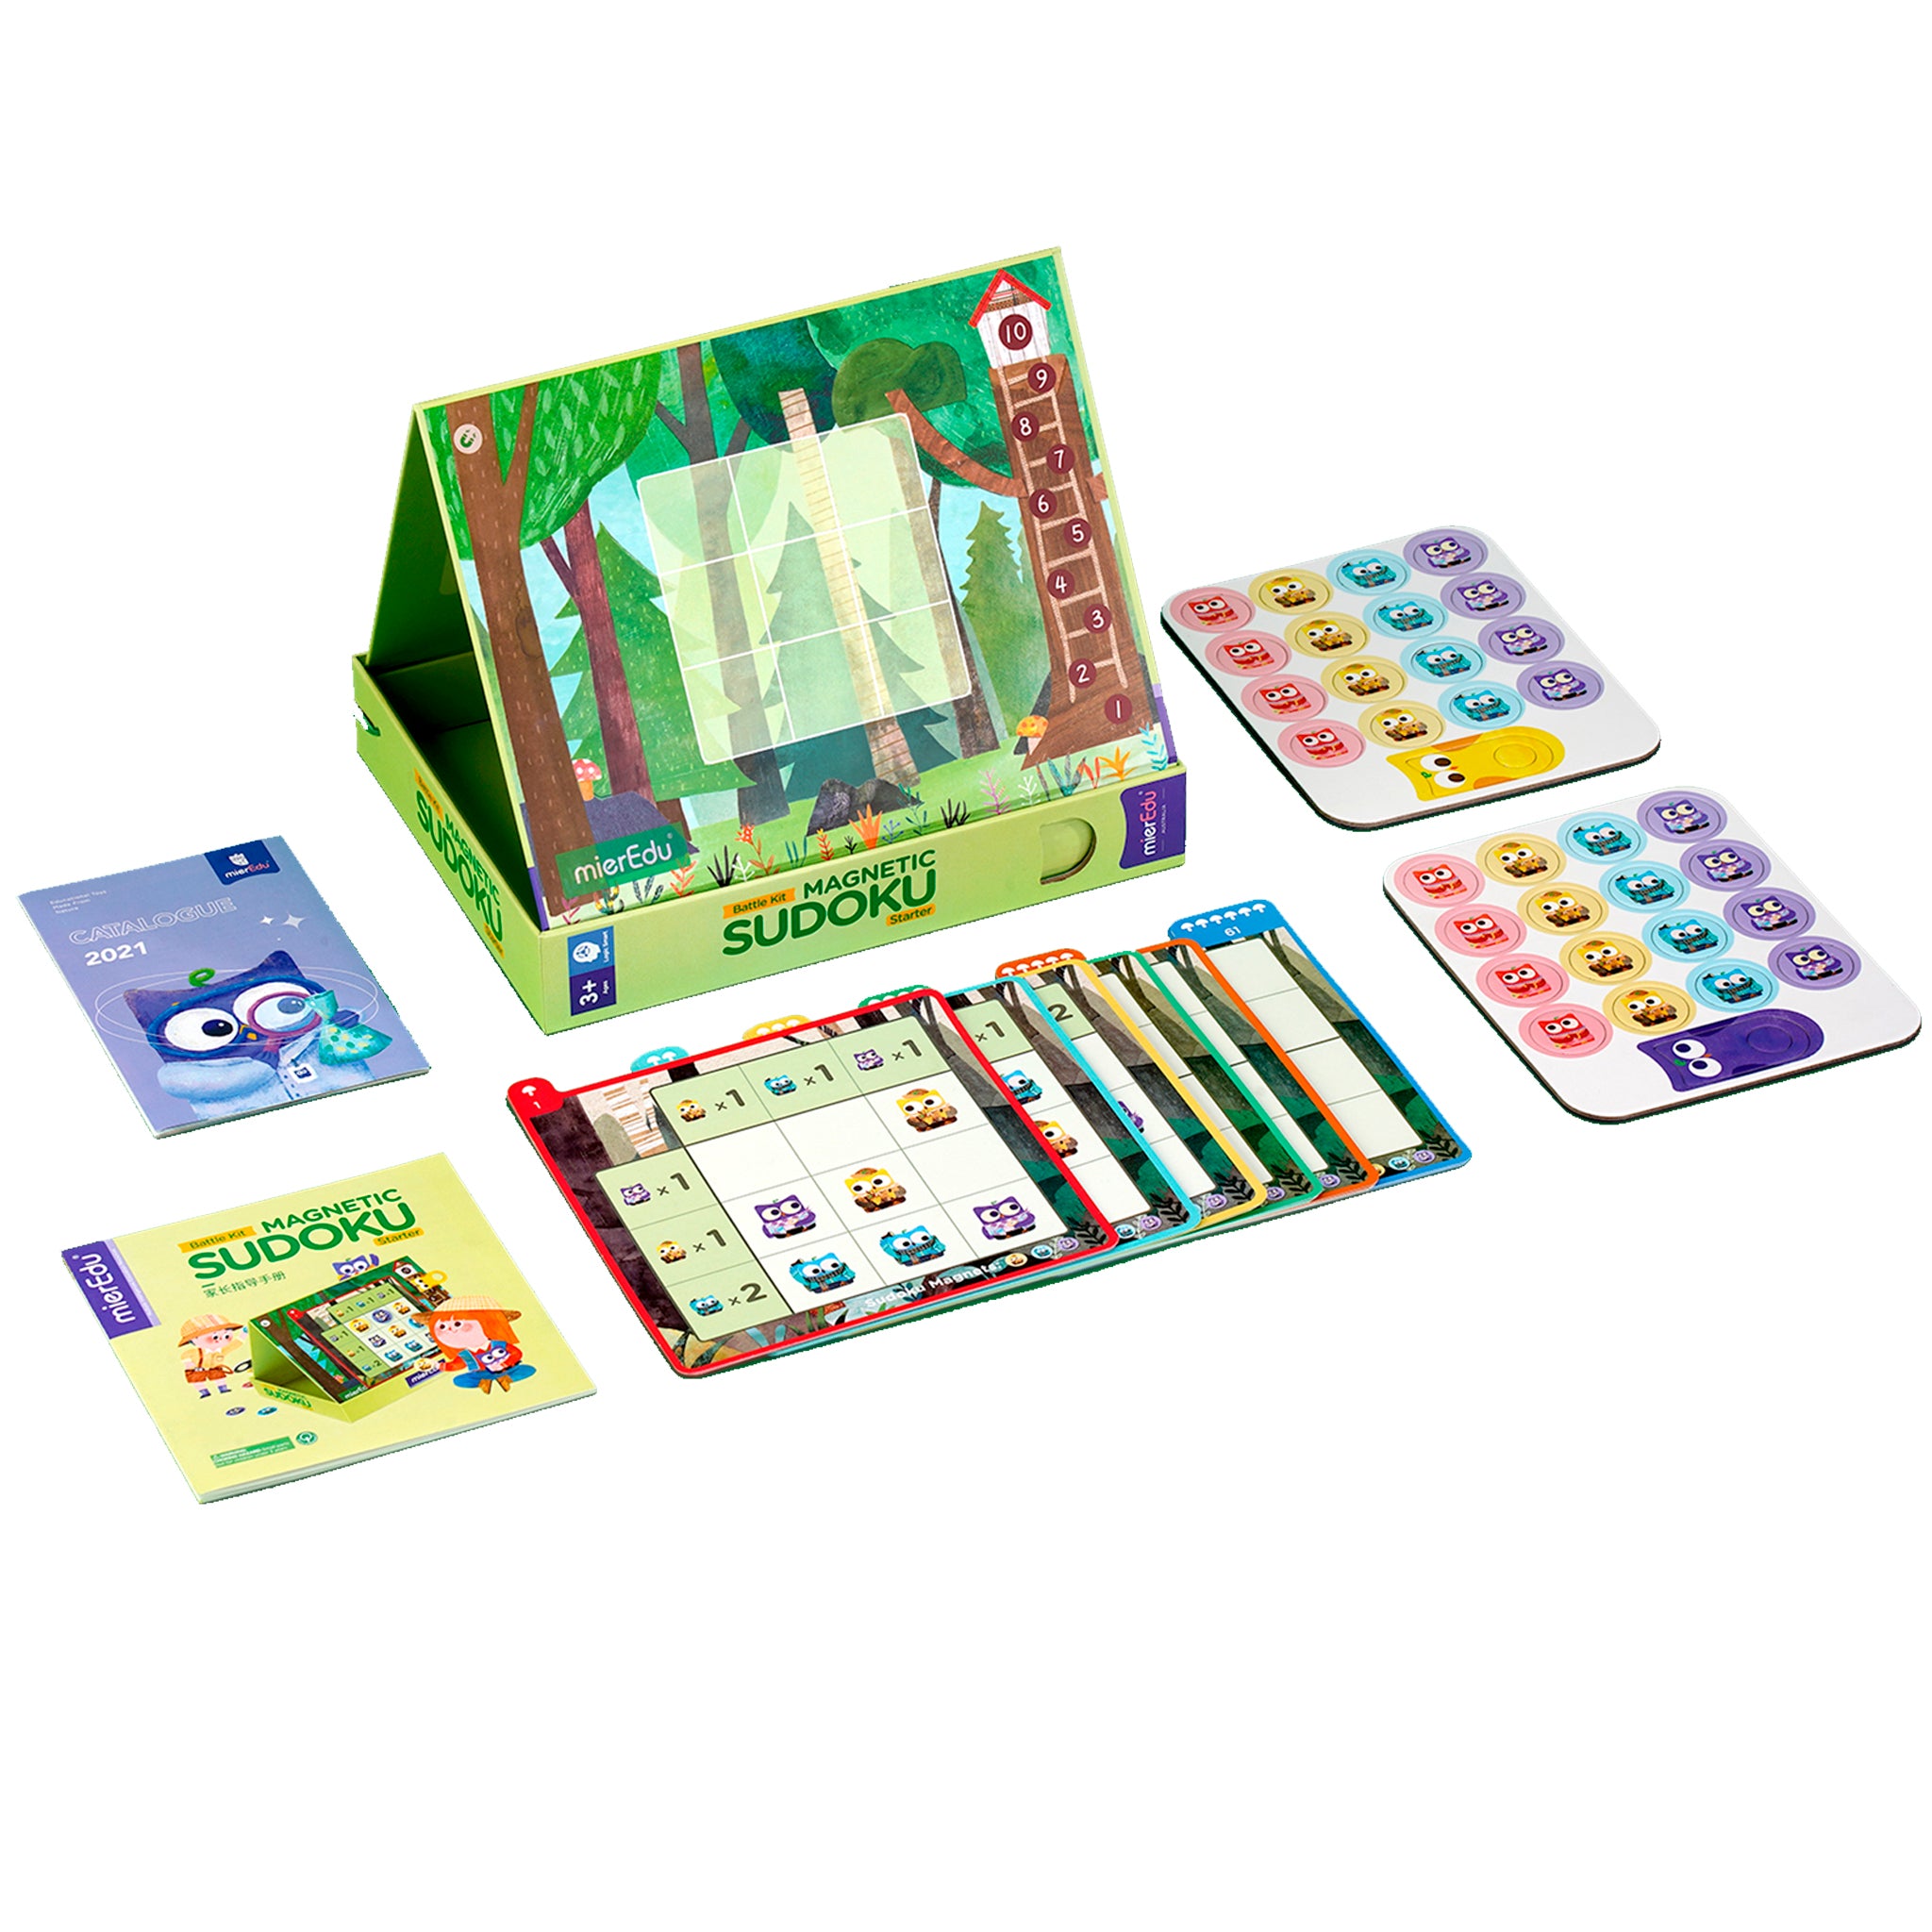 bundet Ren Booth Magnetic Sudoku Starter Kit – mierEdu.AU